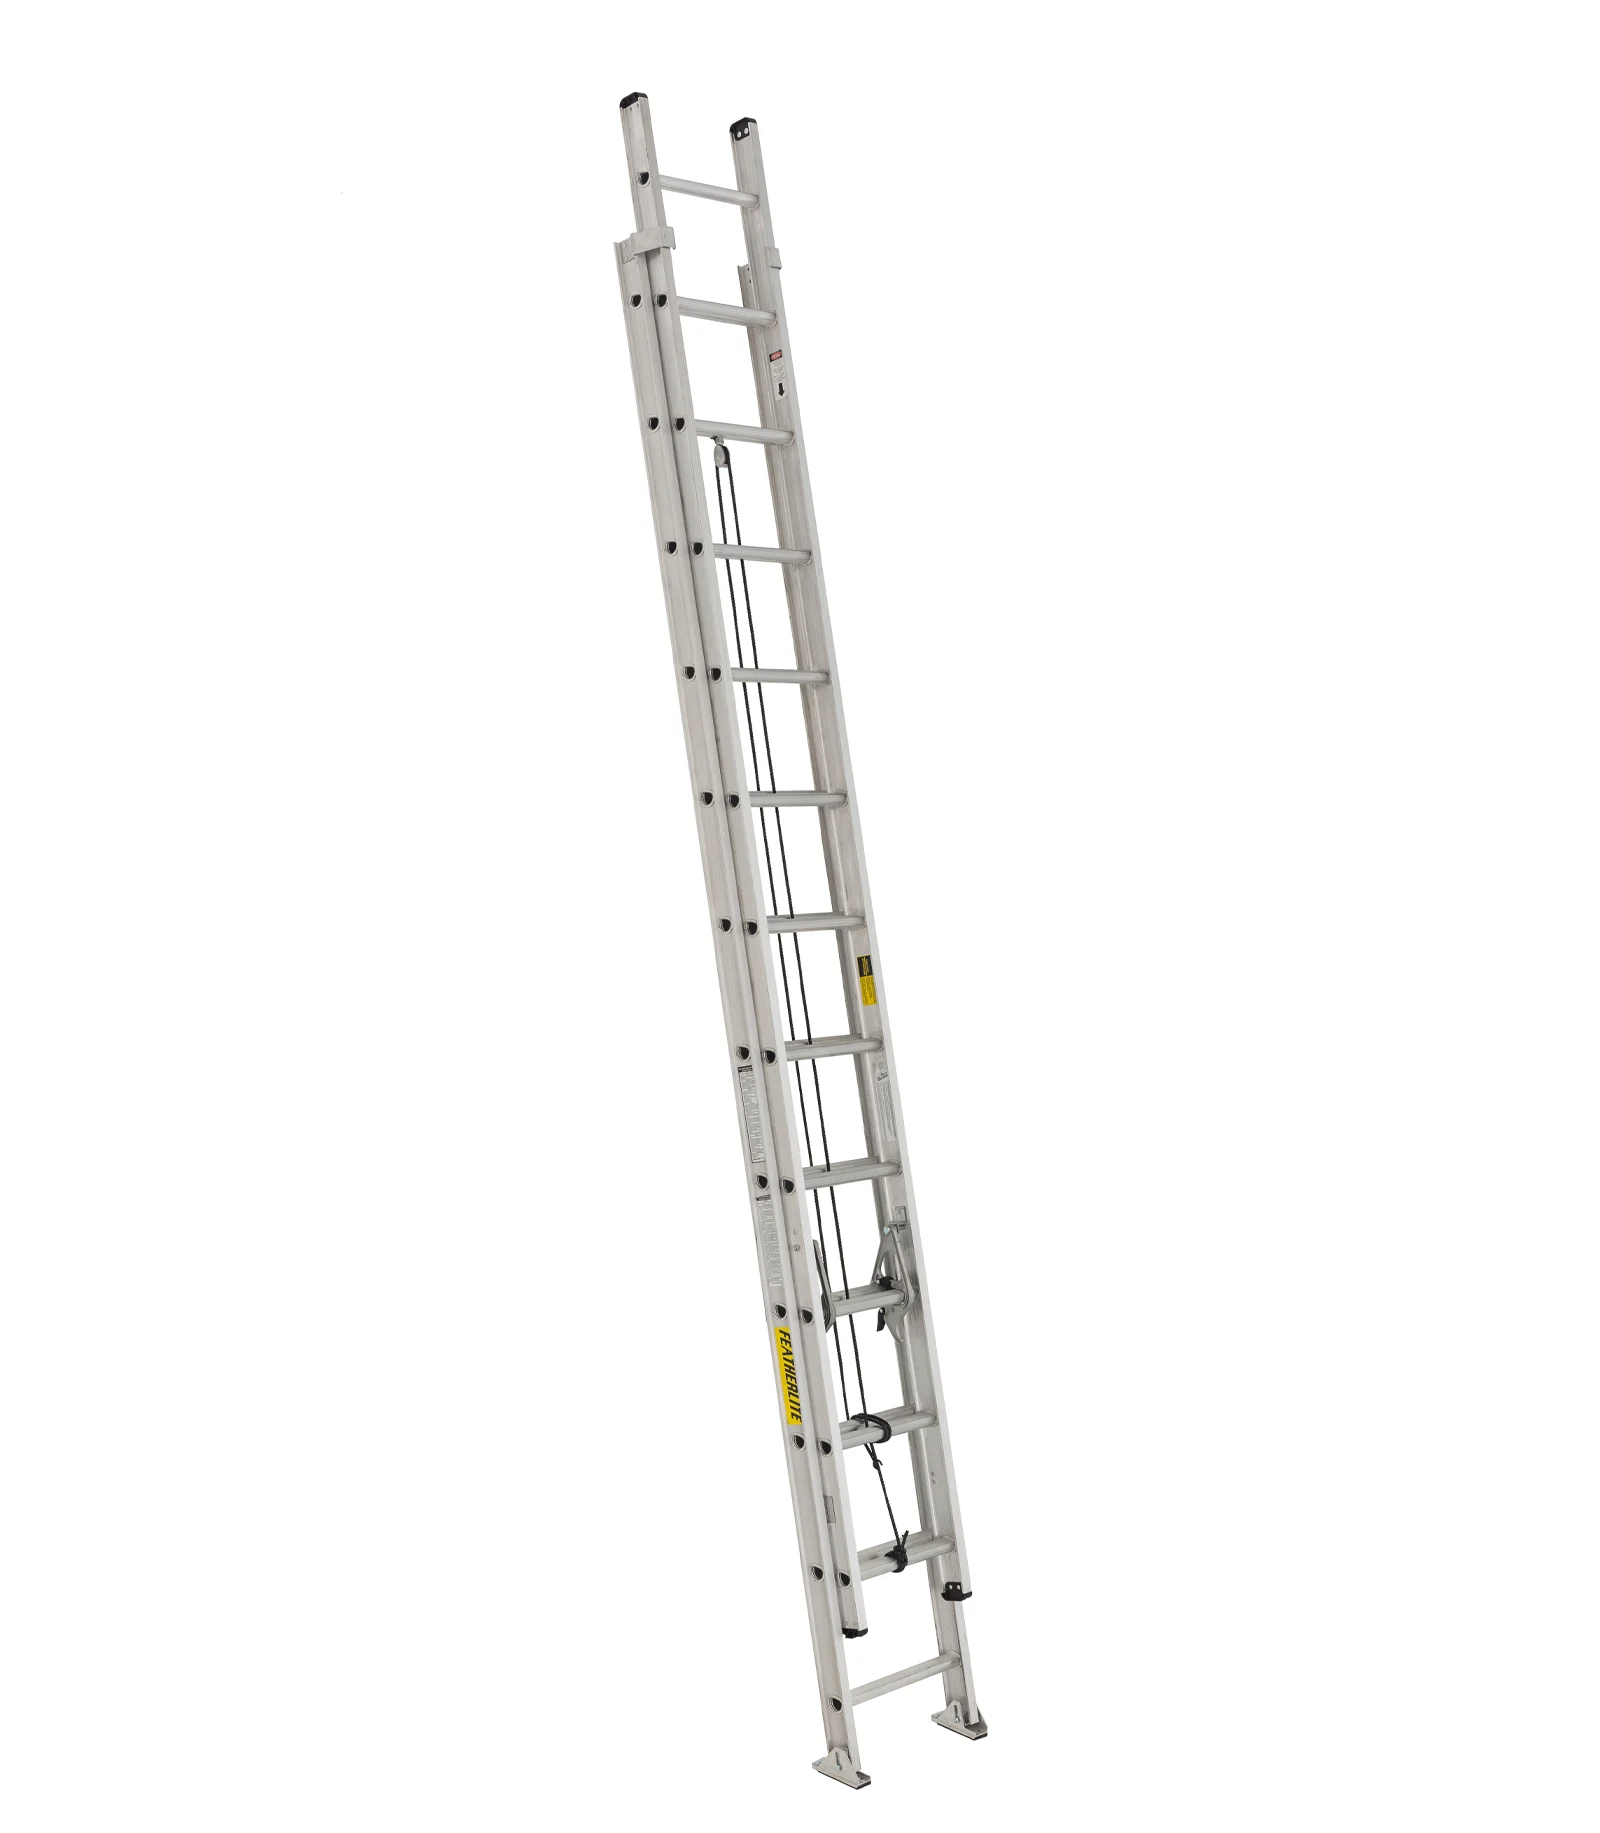 An extension ladder